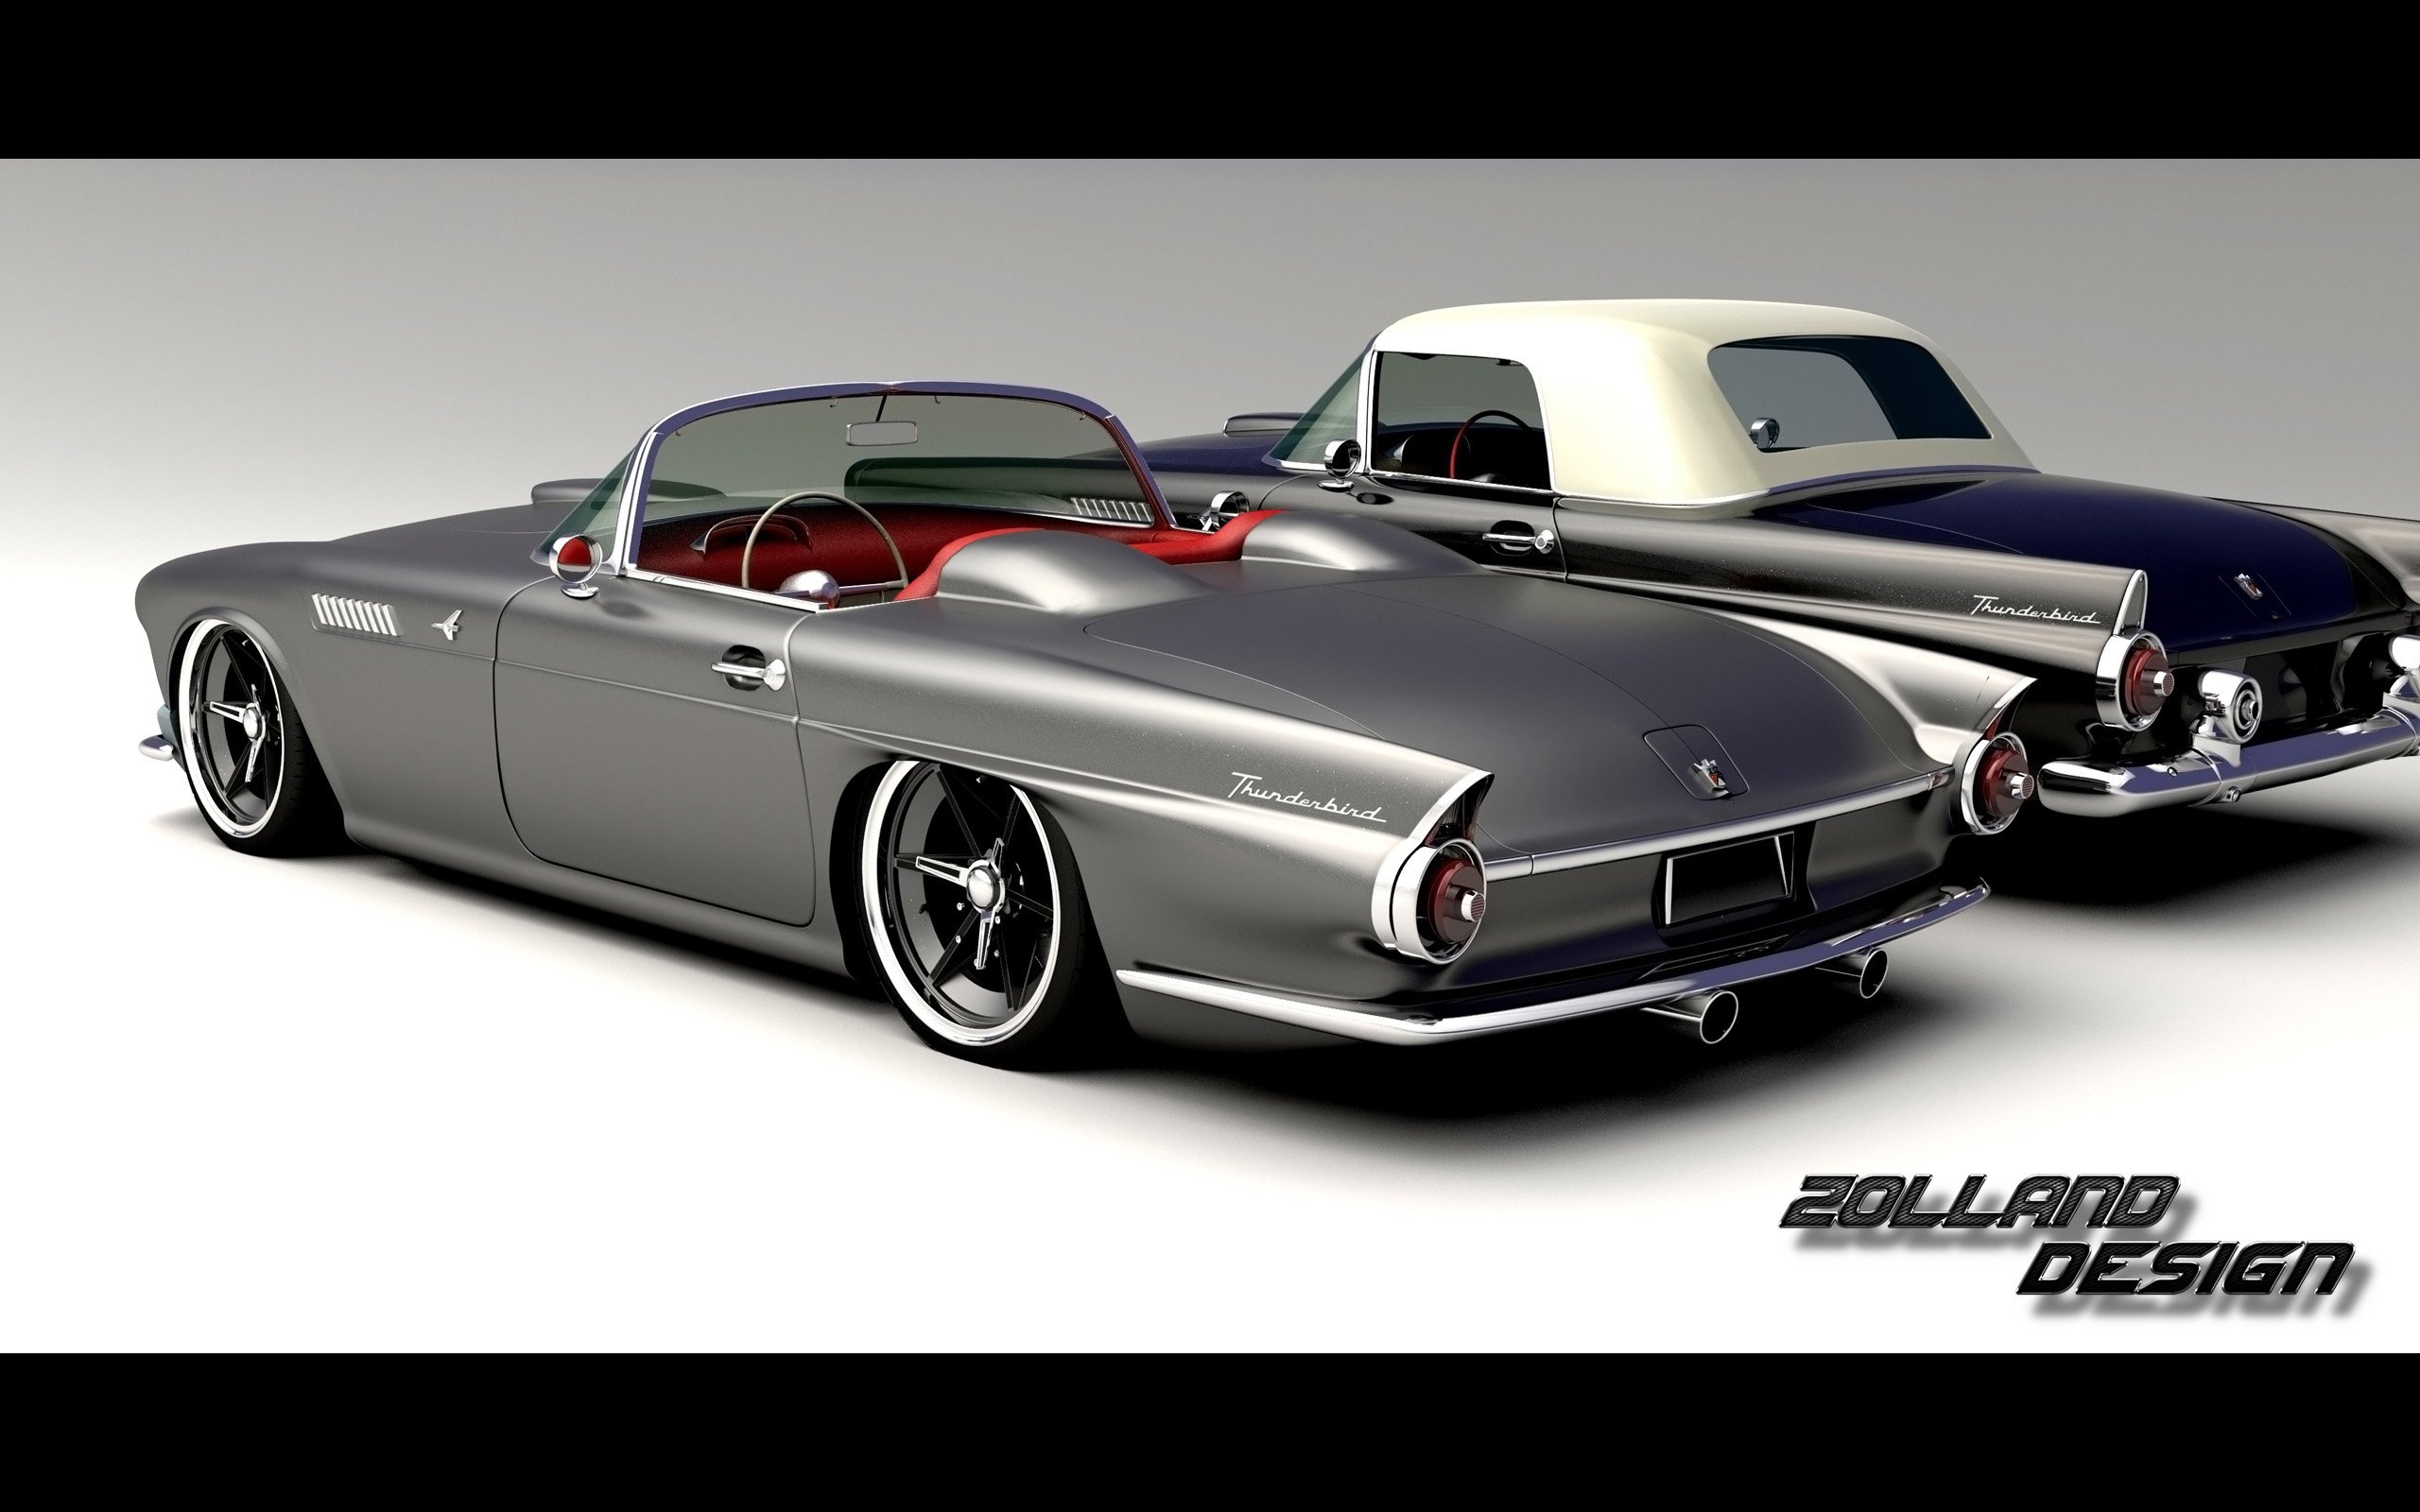 2015, Zolland, Design, Ford, Thunderbird, 1955, Tuning, Custom, Hot, Rod, Rods Wallpaper